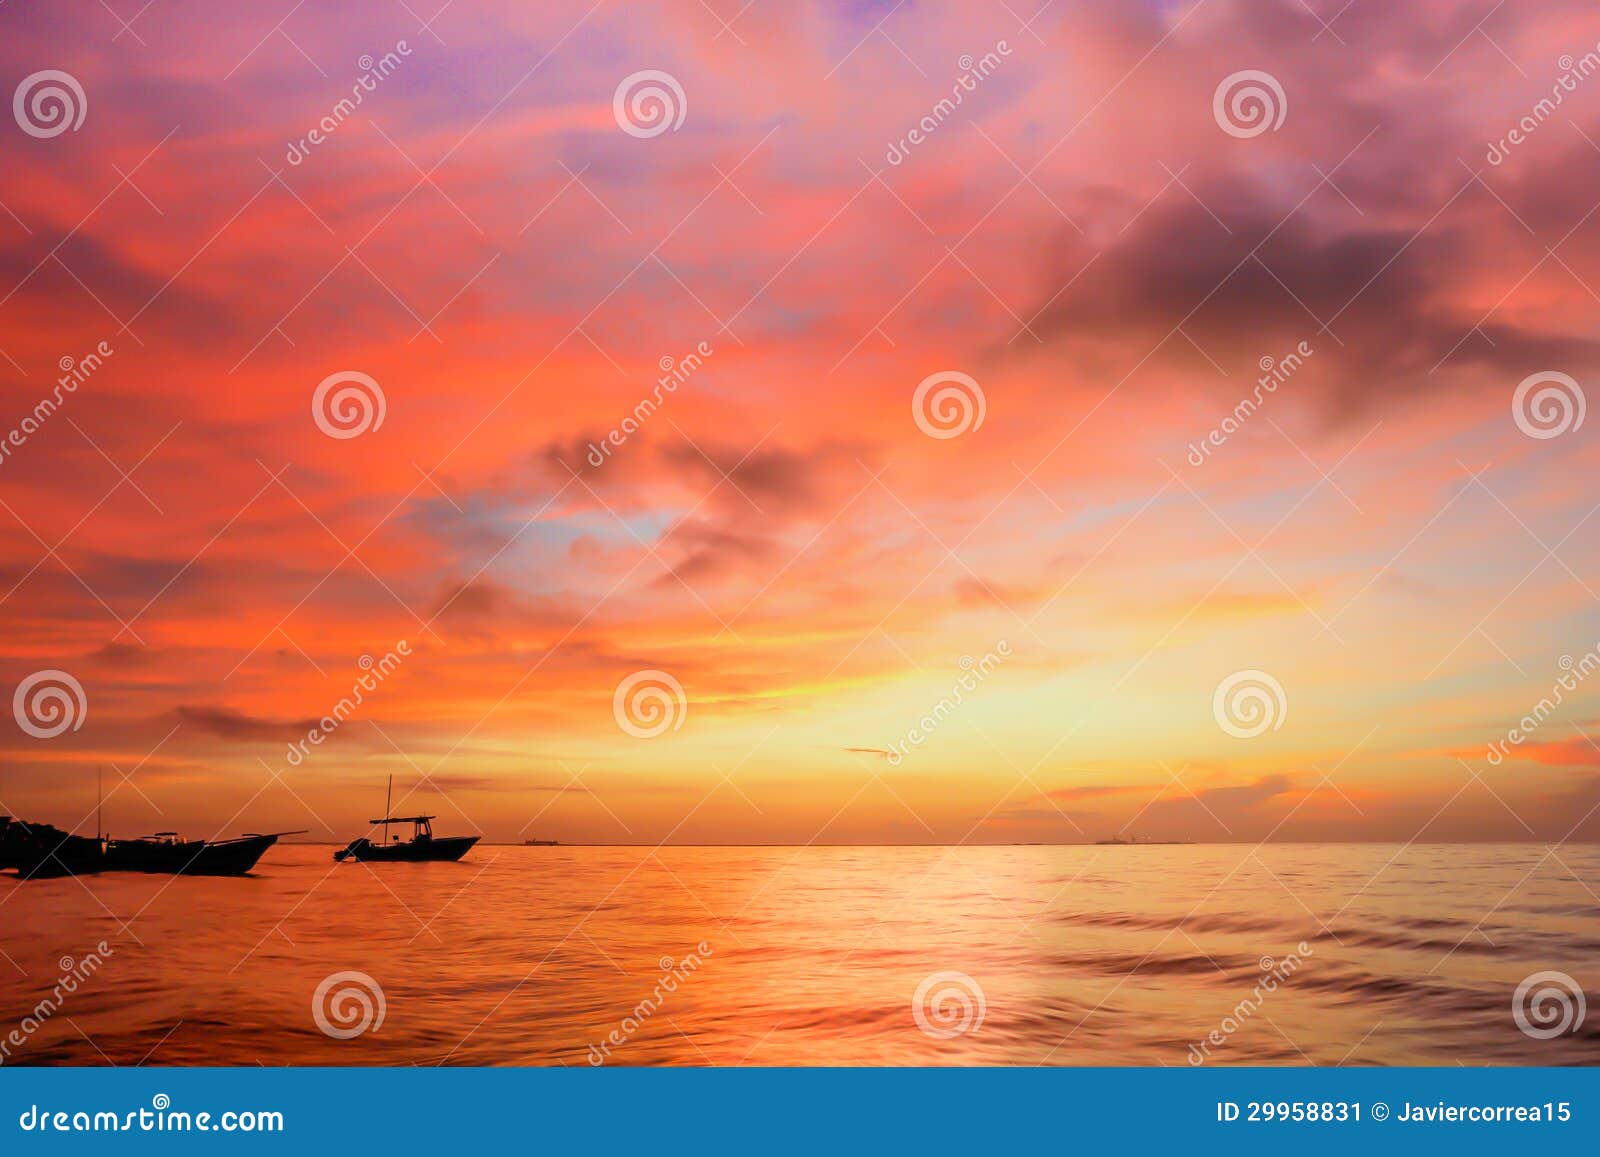 sunset at yucatan peninsula beach